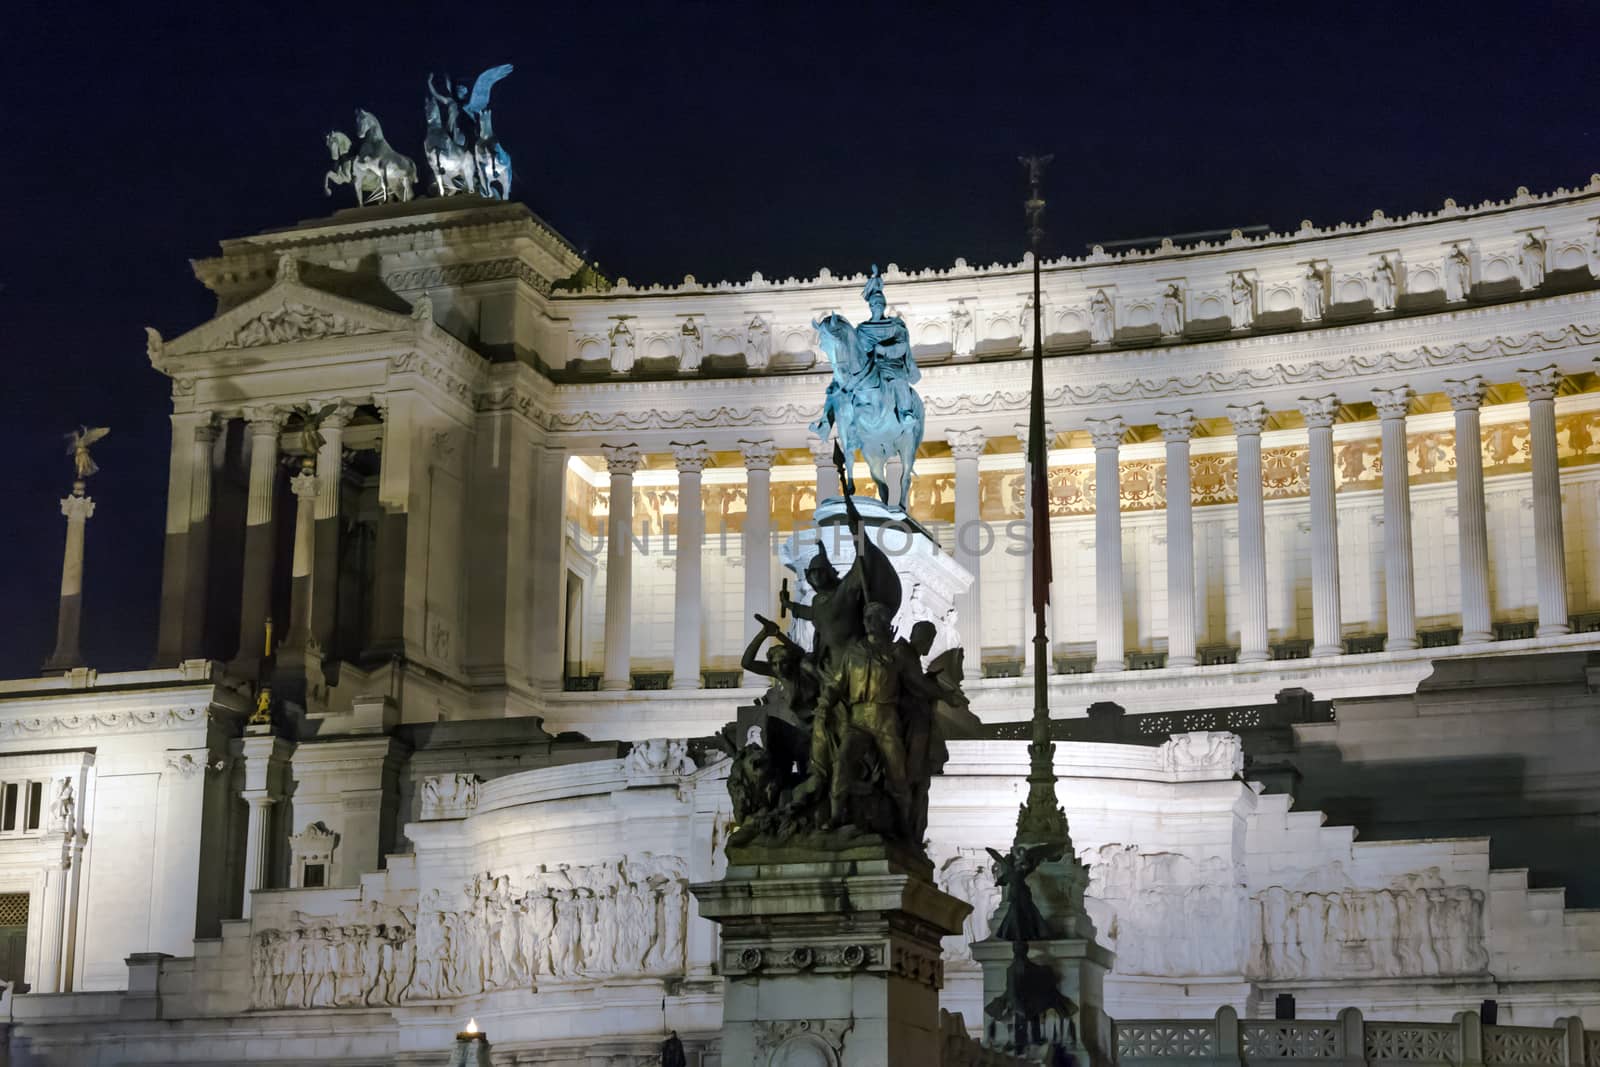 Altare della Patria (Altar of Fatherland, Monument to Victor Emmanuel II) in Piazza Venezia,  Rome at night